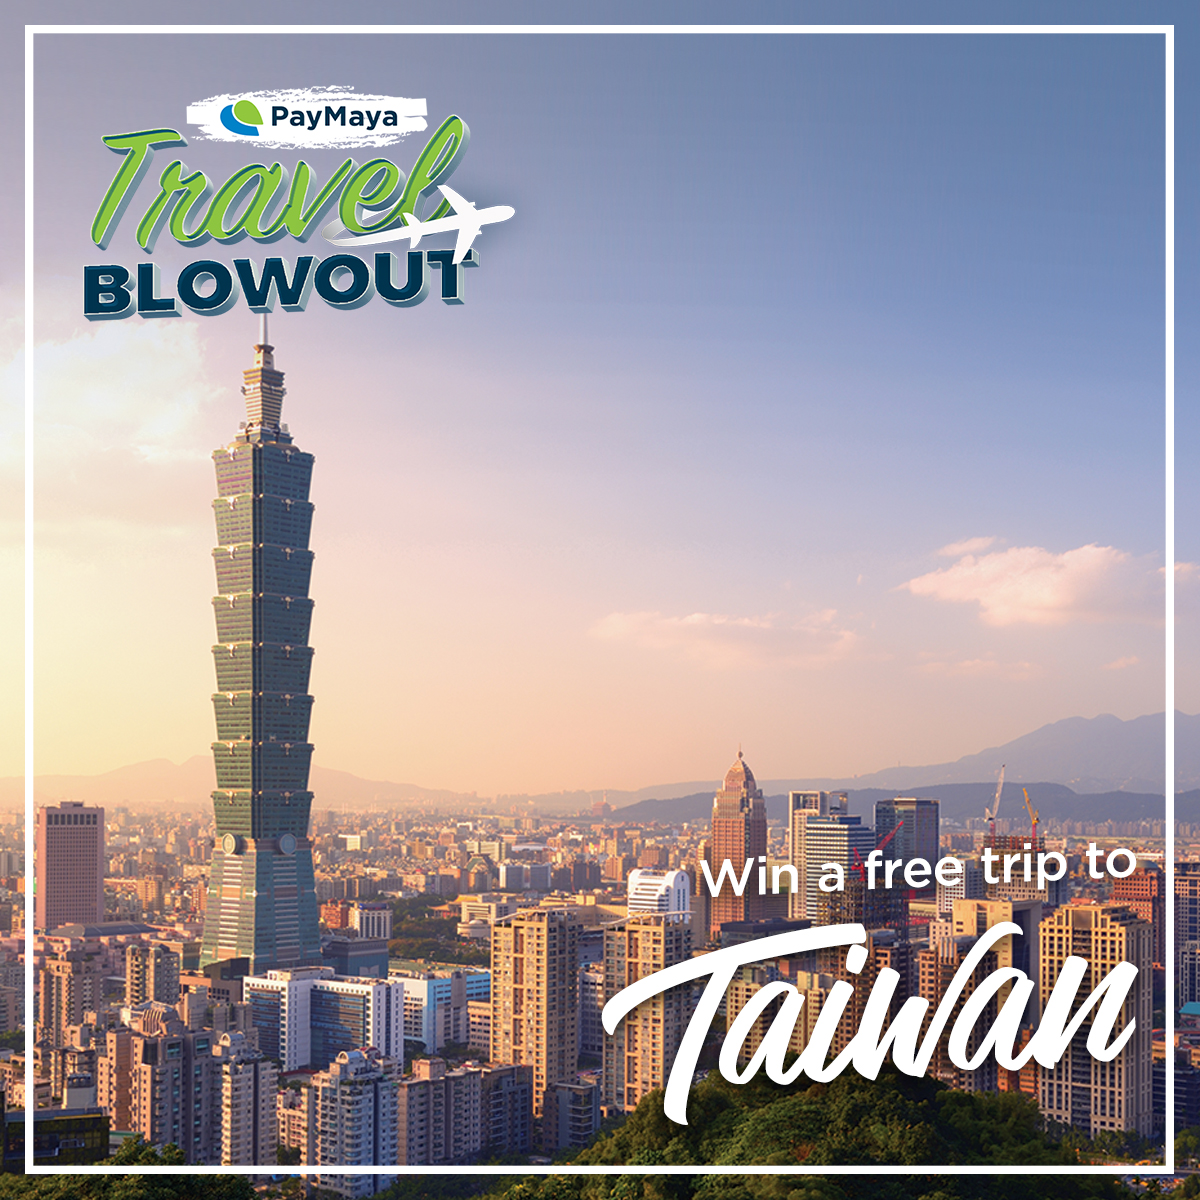 PayMaya_TravelBlowout_Taiwan